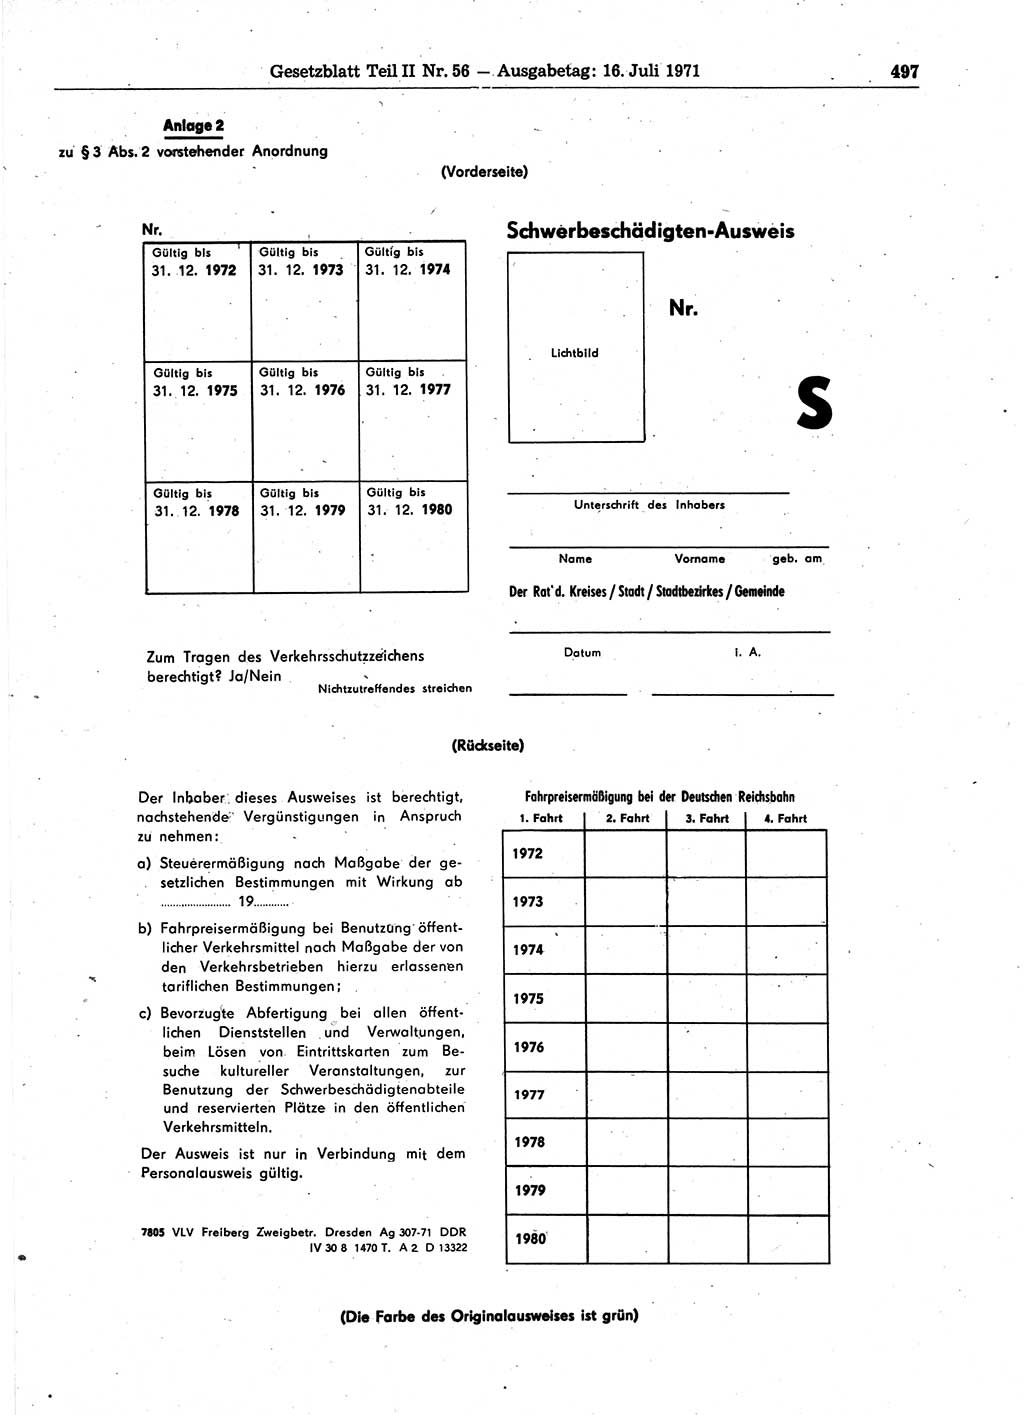 Gesetzblatt (GBl.) der Deutschen Demokratischen Republik (DDR) Teil ⅠⅠ 1971, Seite 497 (GBl. DDR ⅠⅠ 1971, S. 497)